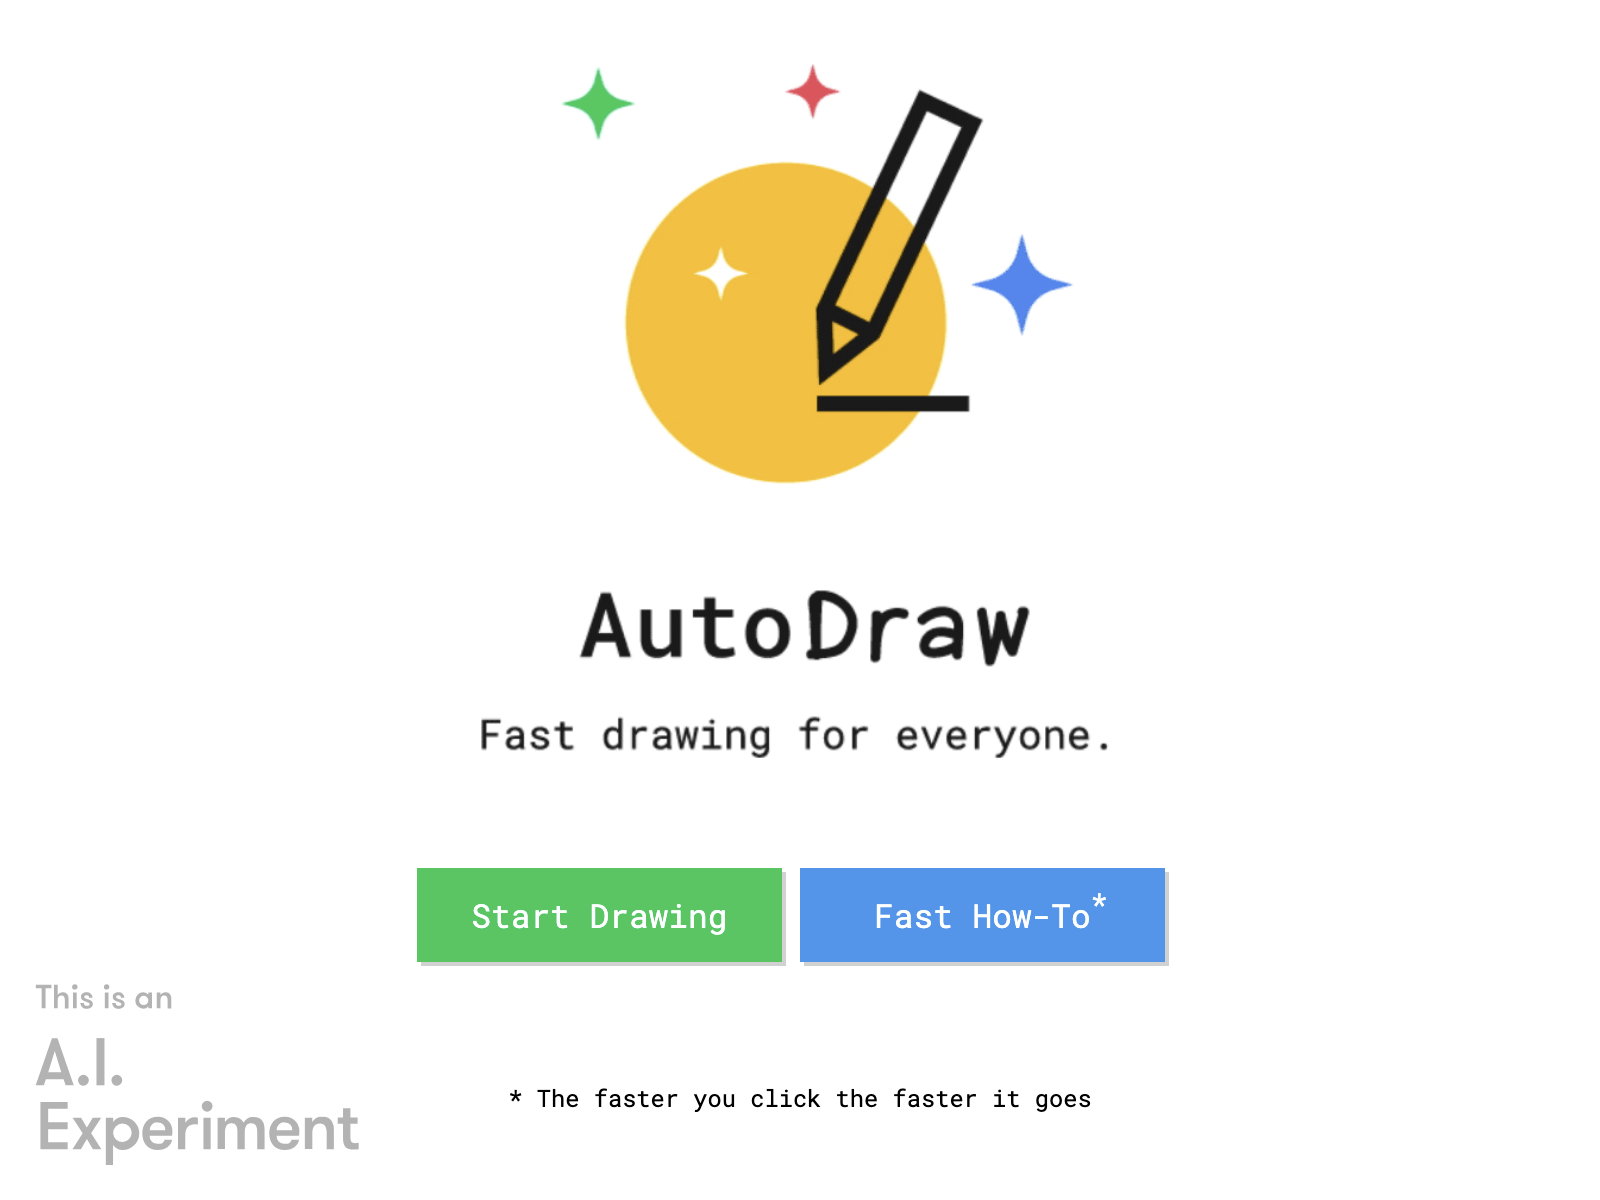 auto draw Review: Pros, Cons, Alternatives